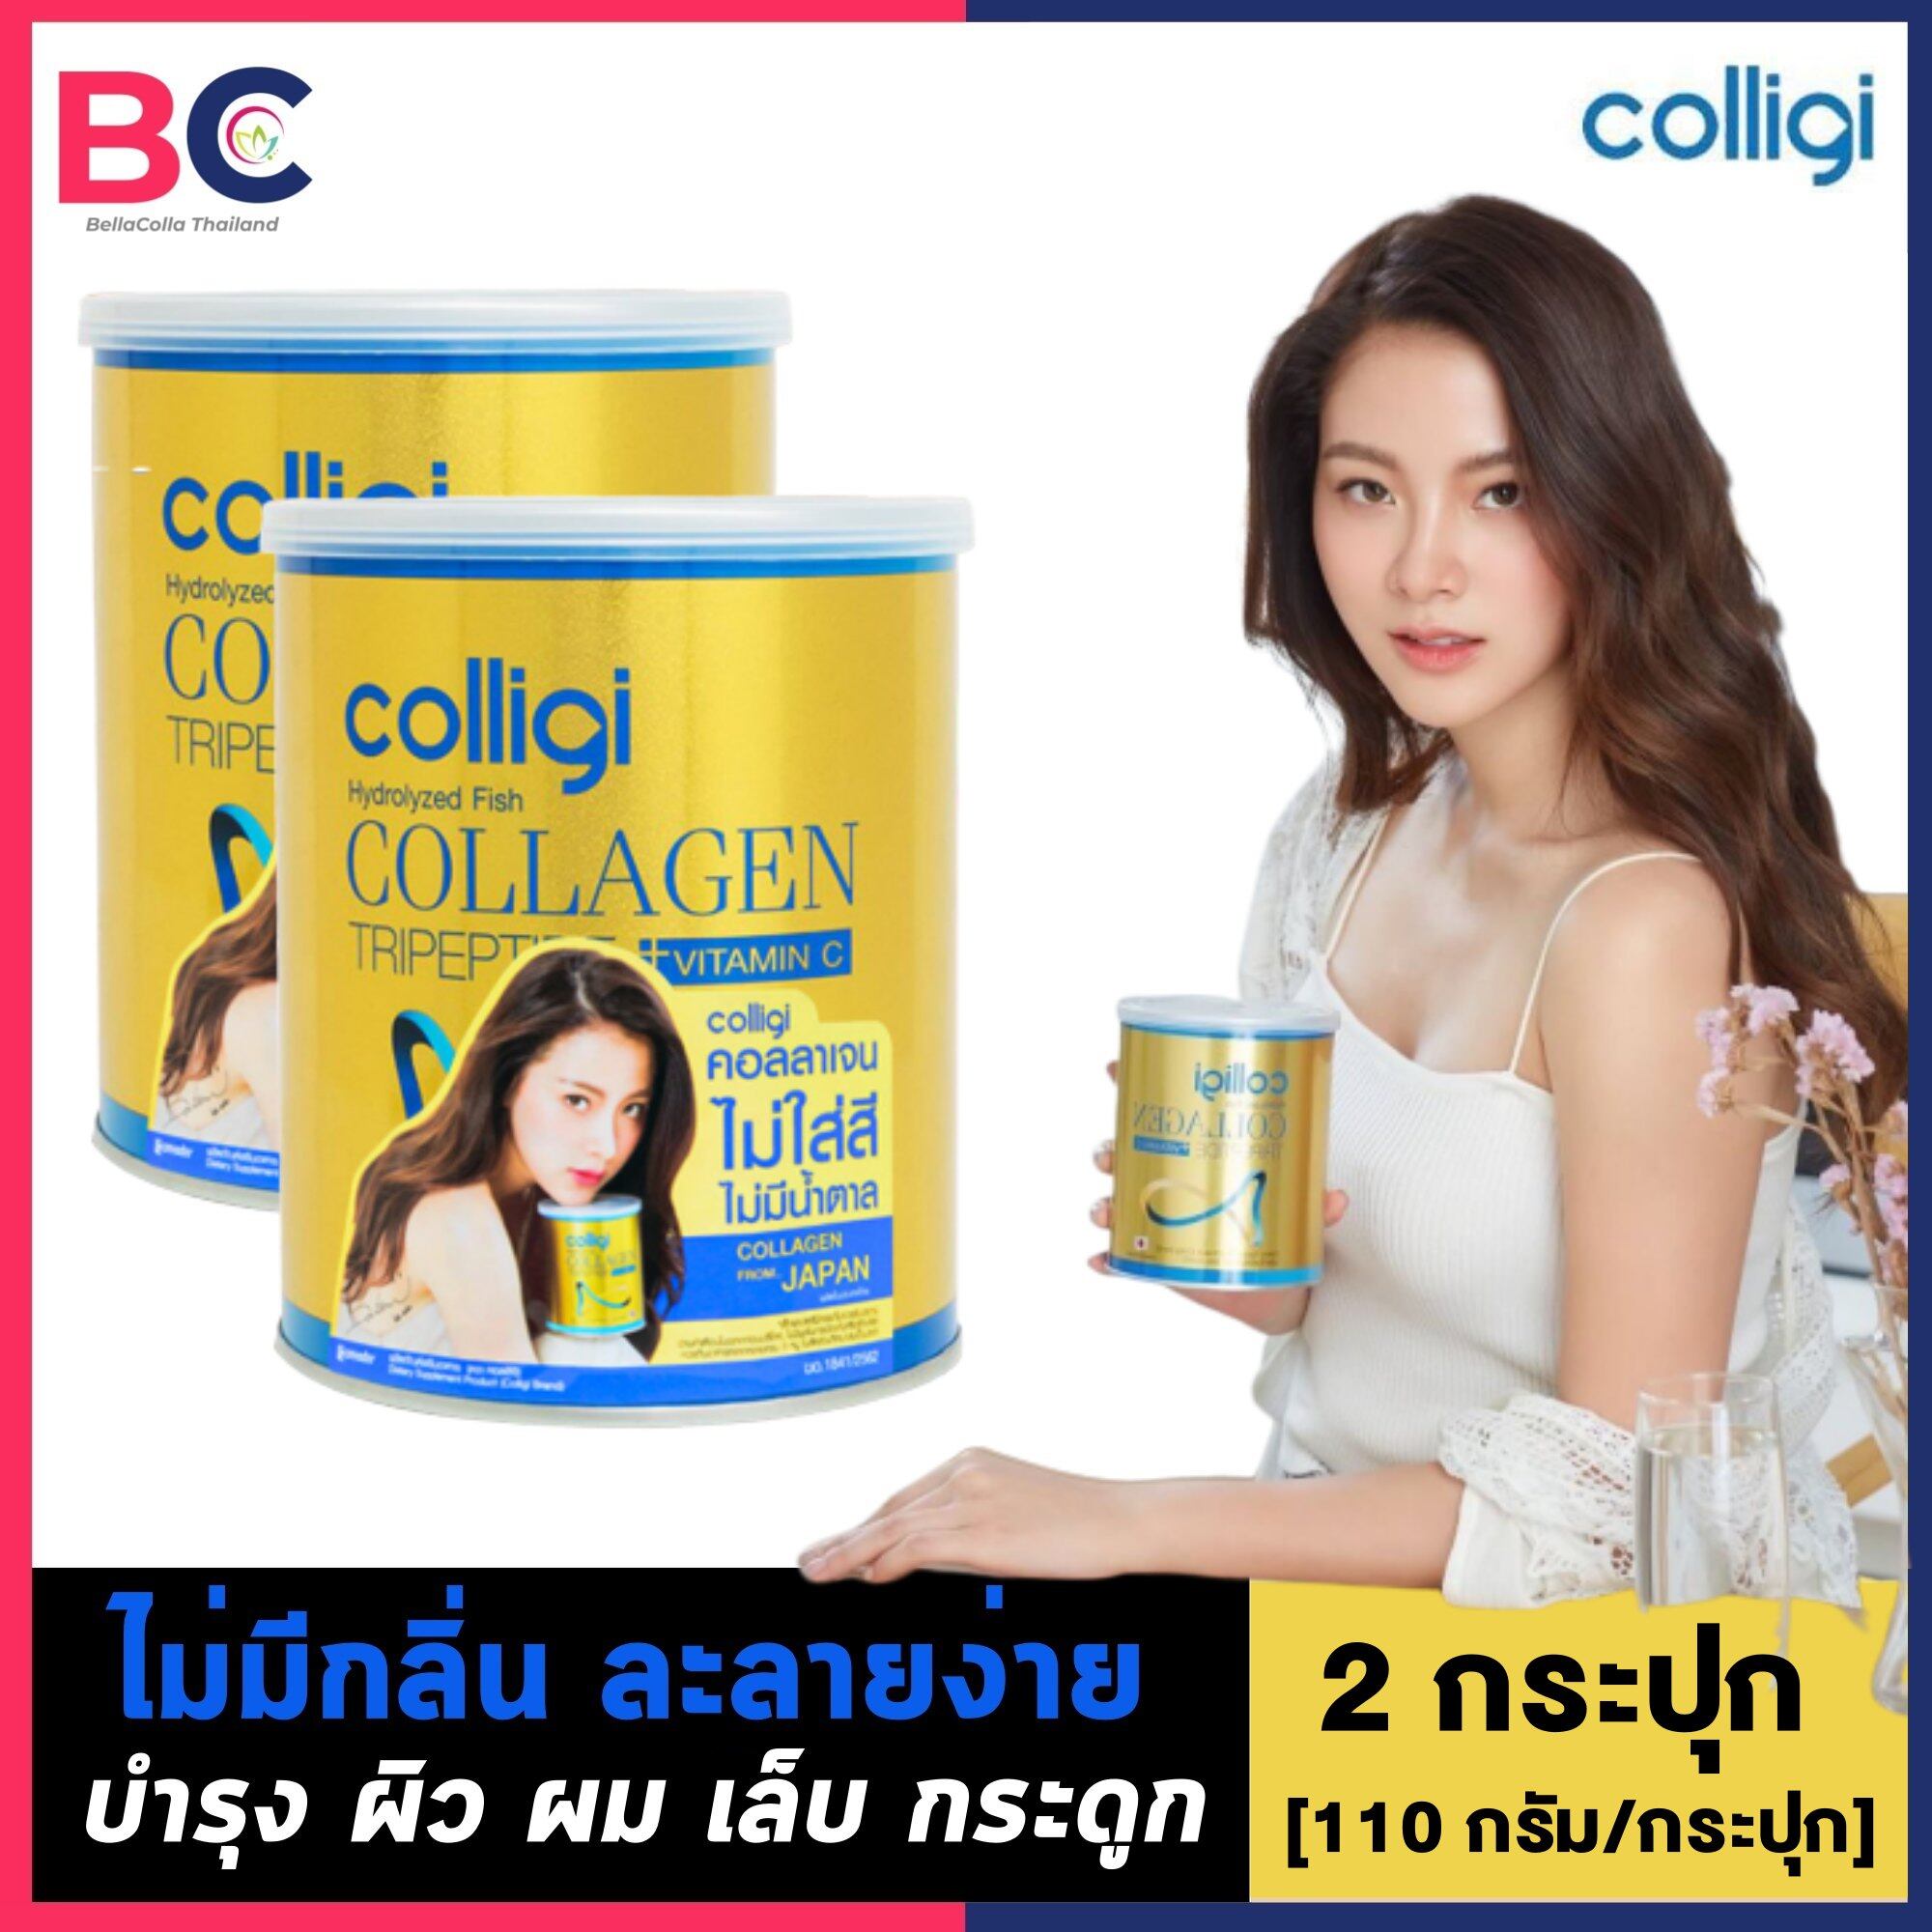 Amado Colligi Collagen TriPeptide + Vitamin C อมาโด้ คอลลิจิ คอลลาเจน [2 กระป๋อง] [110 กรัม/กระป๋อง] อมาโด้ คอลลิจิ คอลลาเจน ไตรเปปไทด์ + วิตามินซี โฉมใหม่ ขาวไวกว่าเดิม ไม่ใส่สี ไม่มีน้ำตาล ทานแล้วไม่อ้วน Amado collagen by BellaColla Thailand